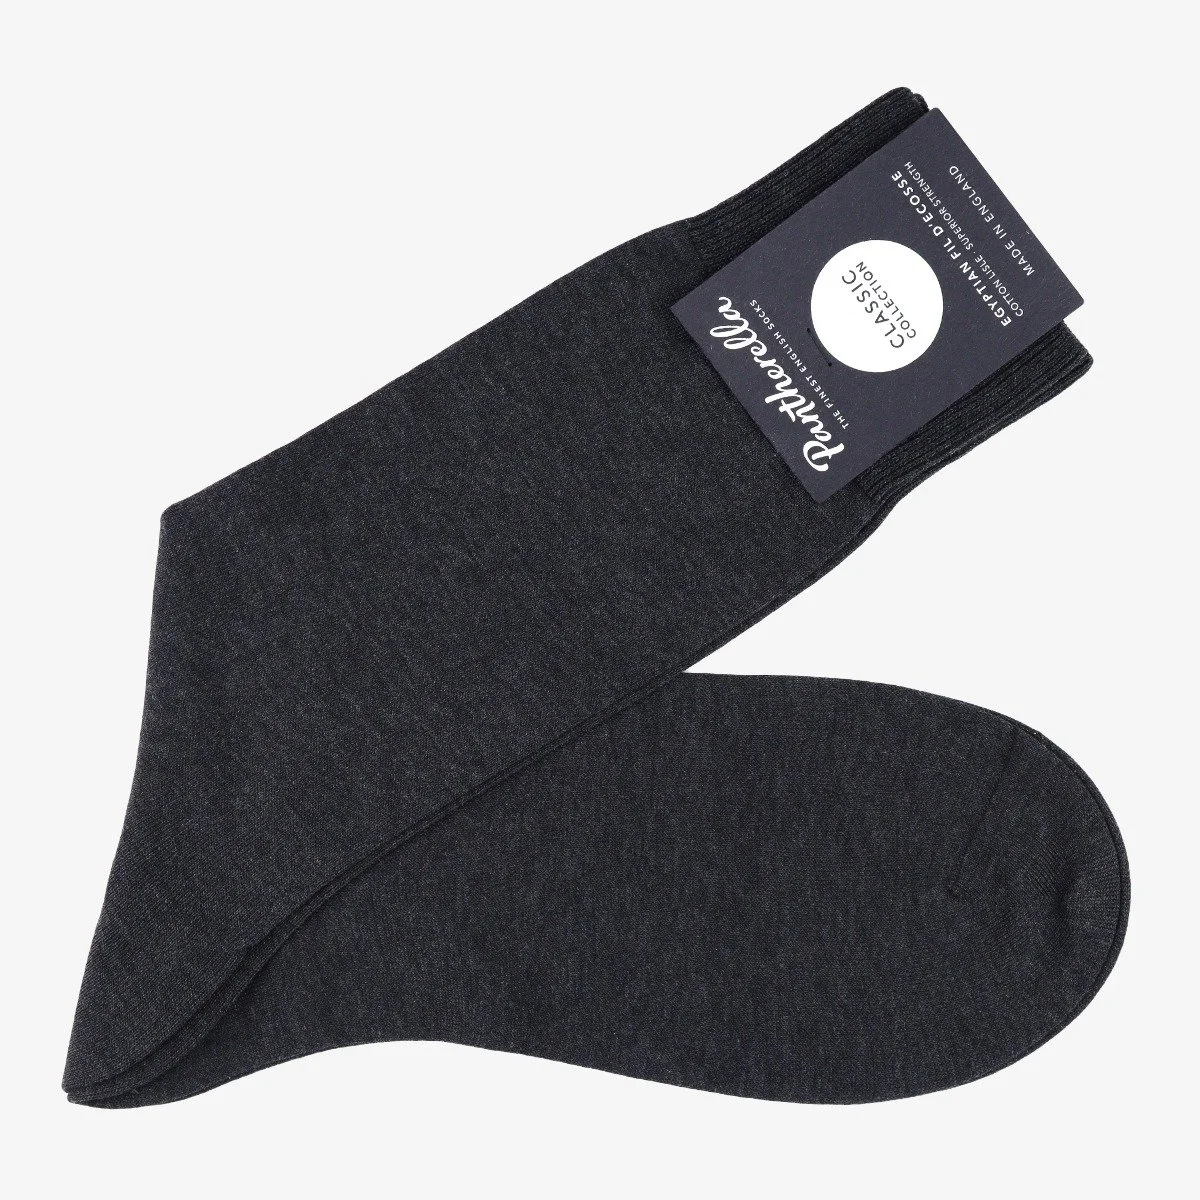 Pantherella Sackville dark grey socks